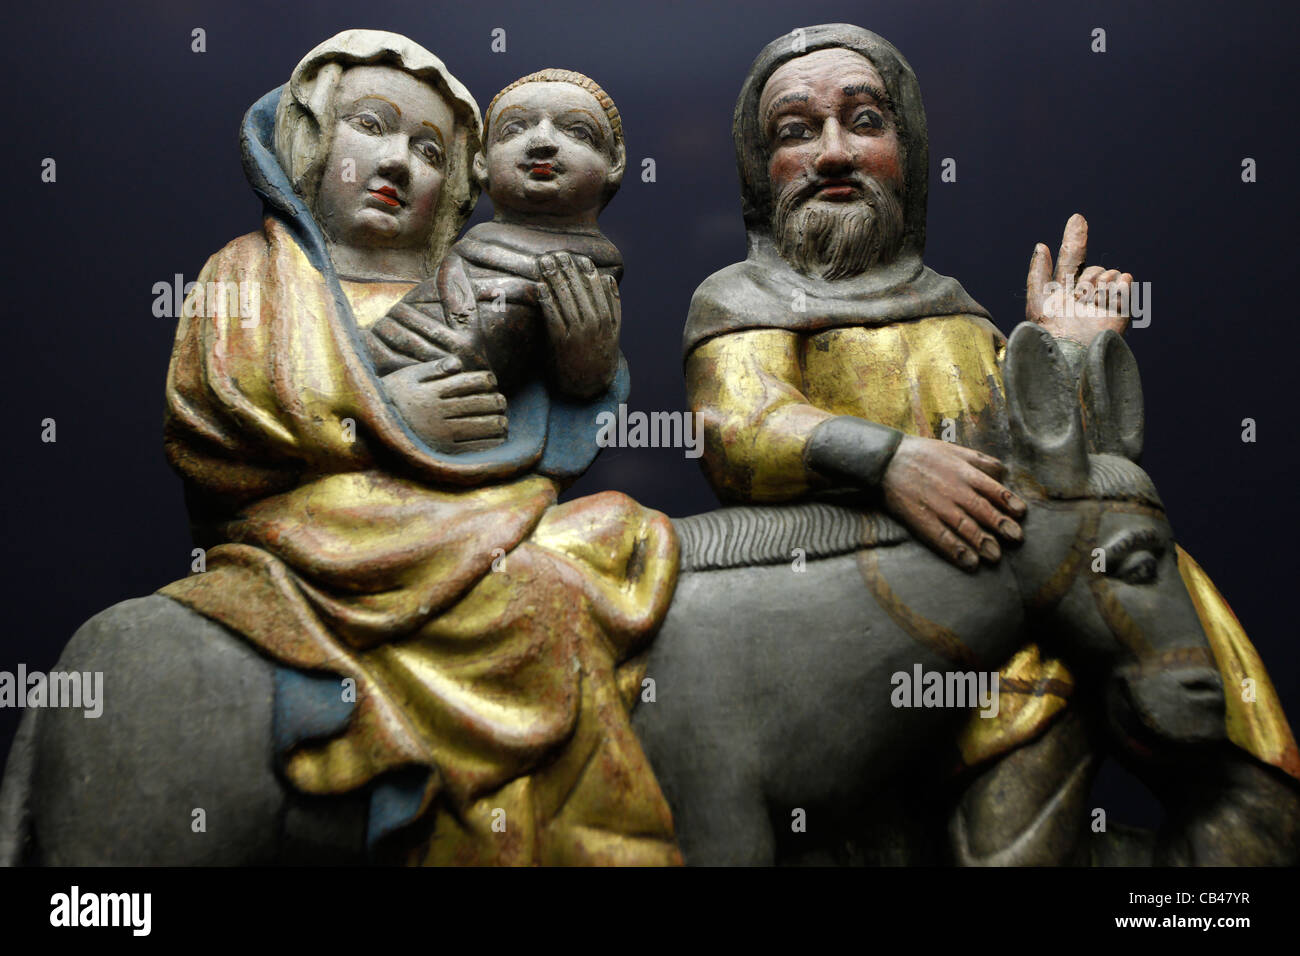 La figure sculptée en bois représentant Sainte Famille - Enfant Jésus, sa mère, Marie, et son mari, Joseph voyager avec un âne exposées au musée à l'intérieur de l'ancienne mairie Altes Rathaus Leipzig, Saxe, Allemagne de l'Est Banque D'Images